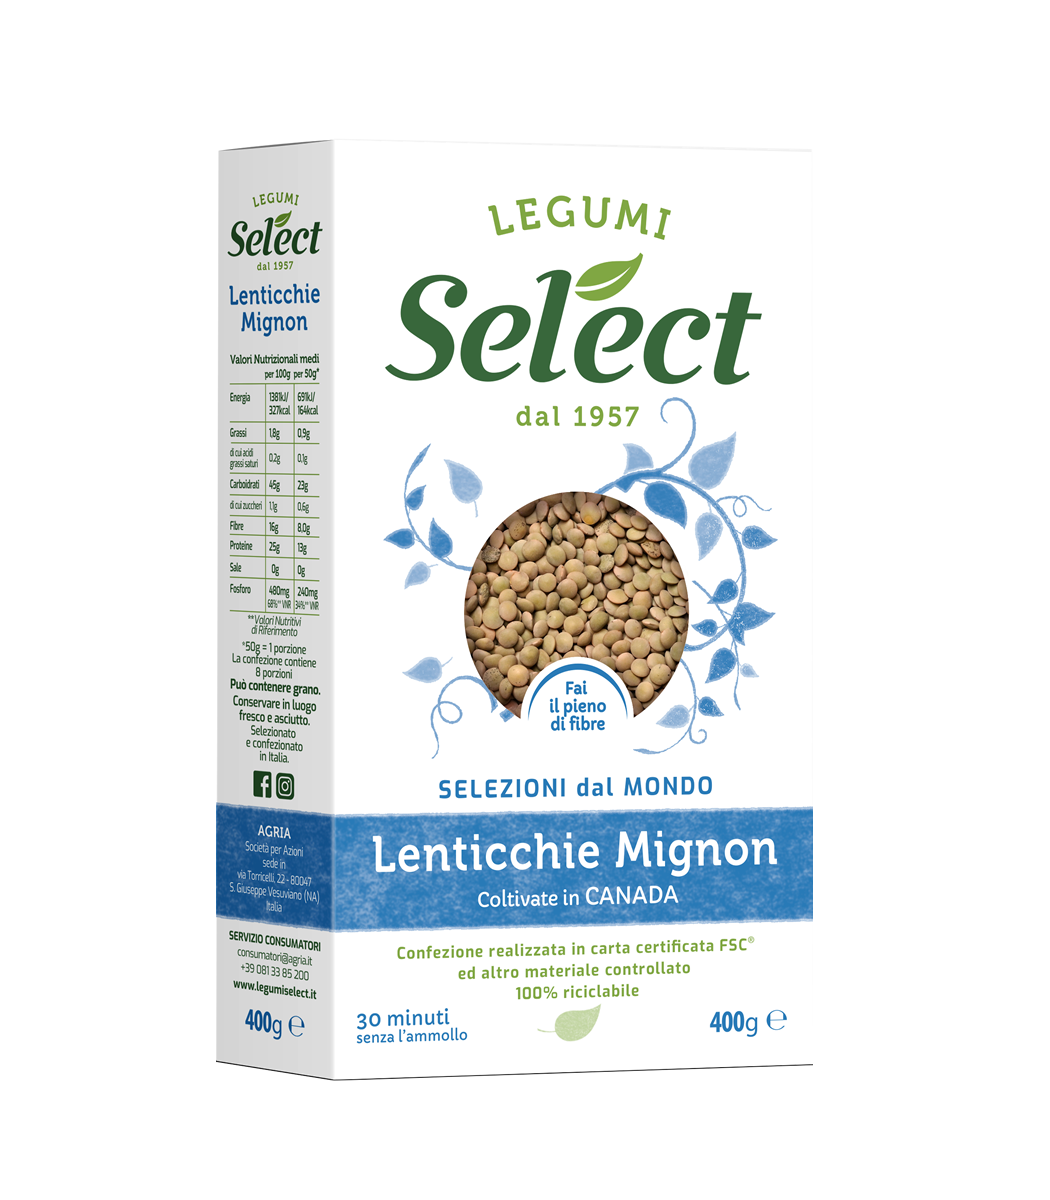 Lenticchie Mignon